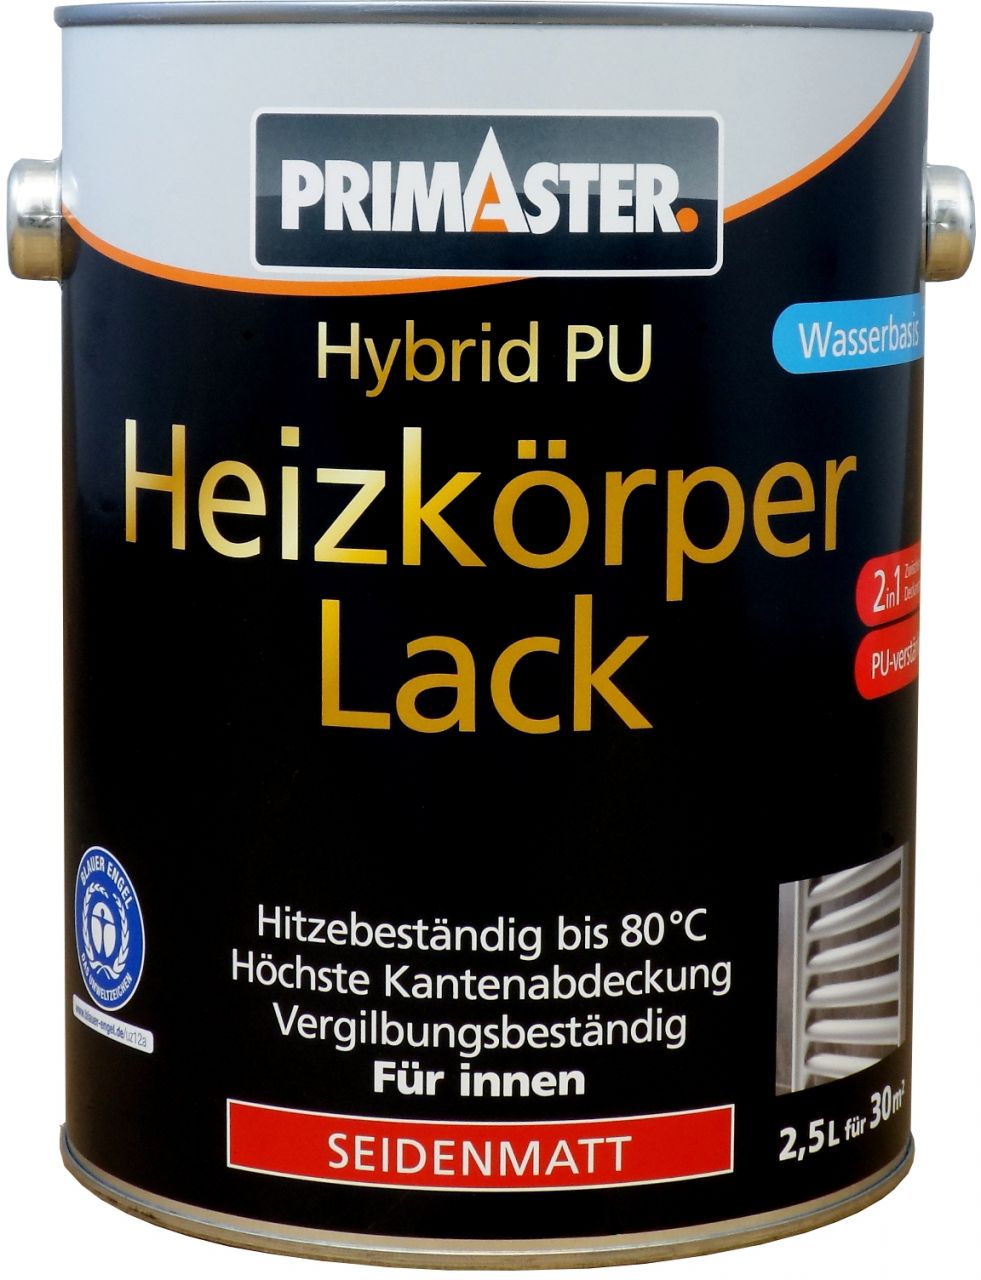 Primaster Hybrid-PU Heizkörperlack 2,5 L weiß seidenmatt von Primaster